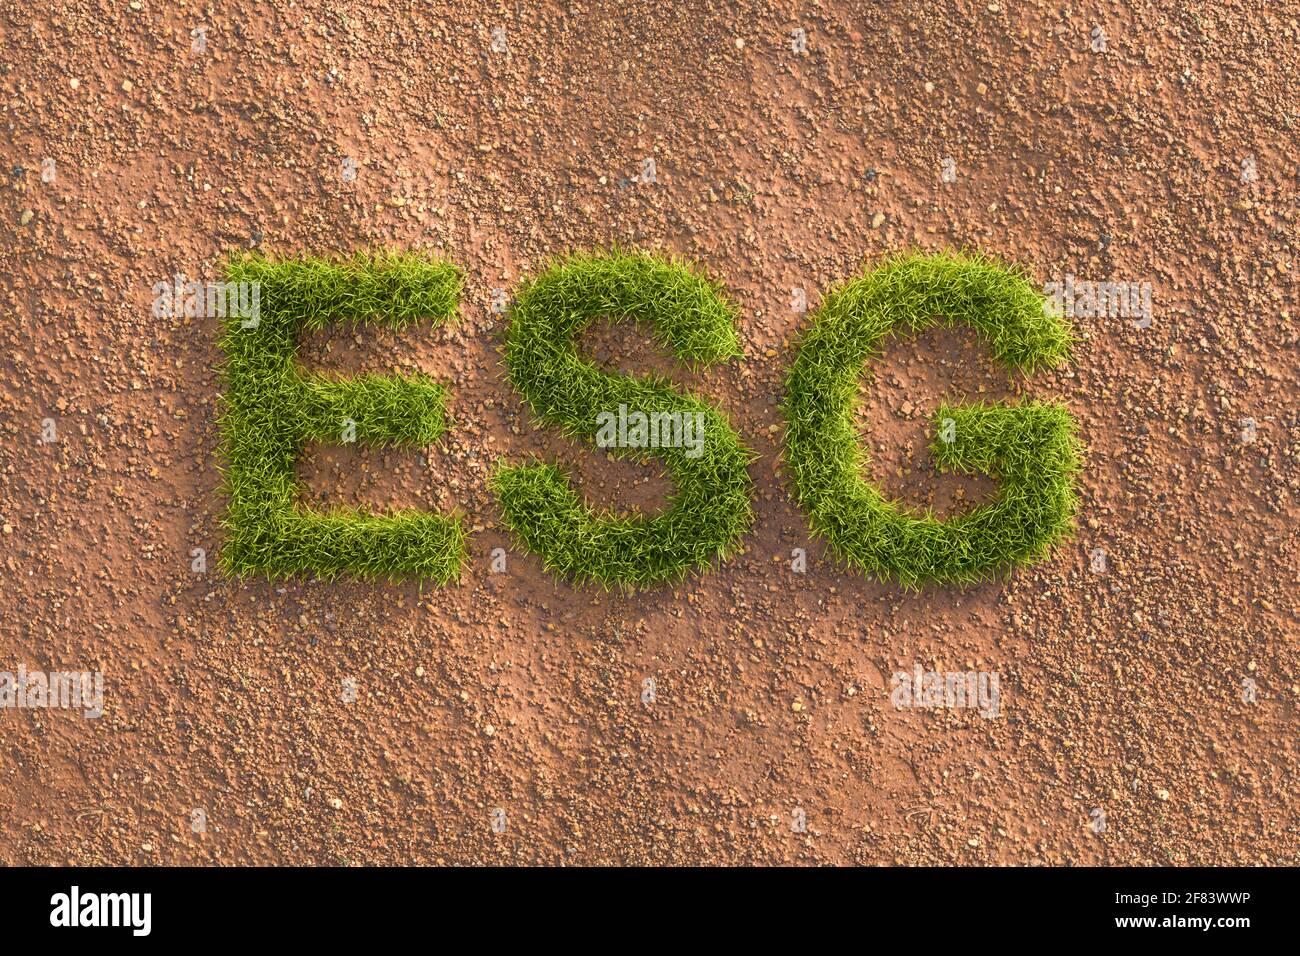 Vert herbe lettres ESG dans un paysage aride. Concept de normes ESG (environnement social Governance) en matière d'investissement. Banque D'Images